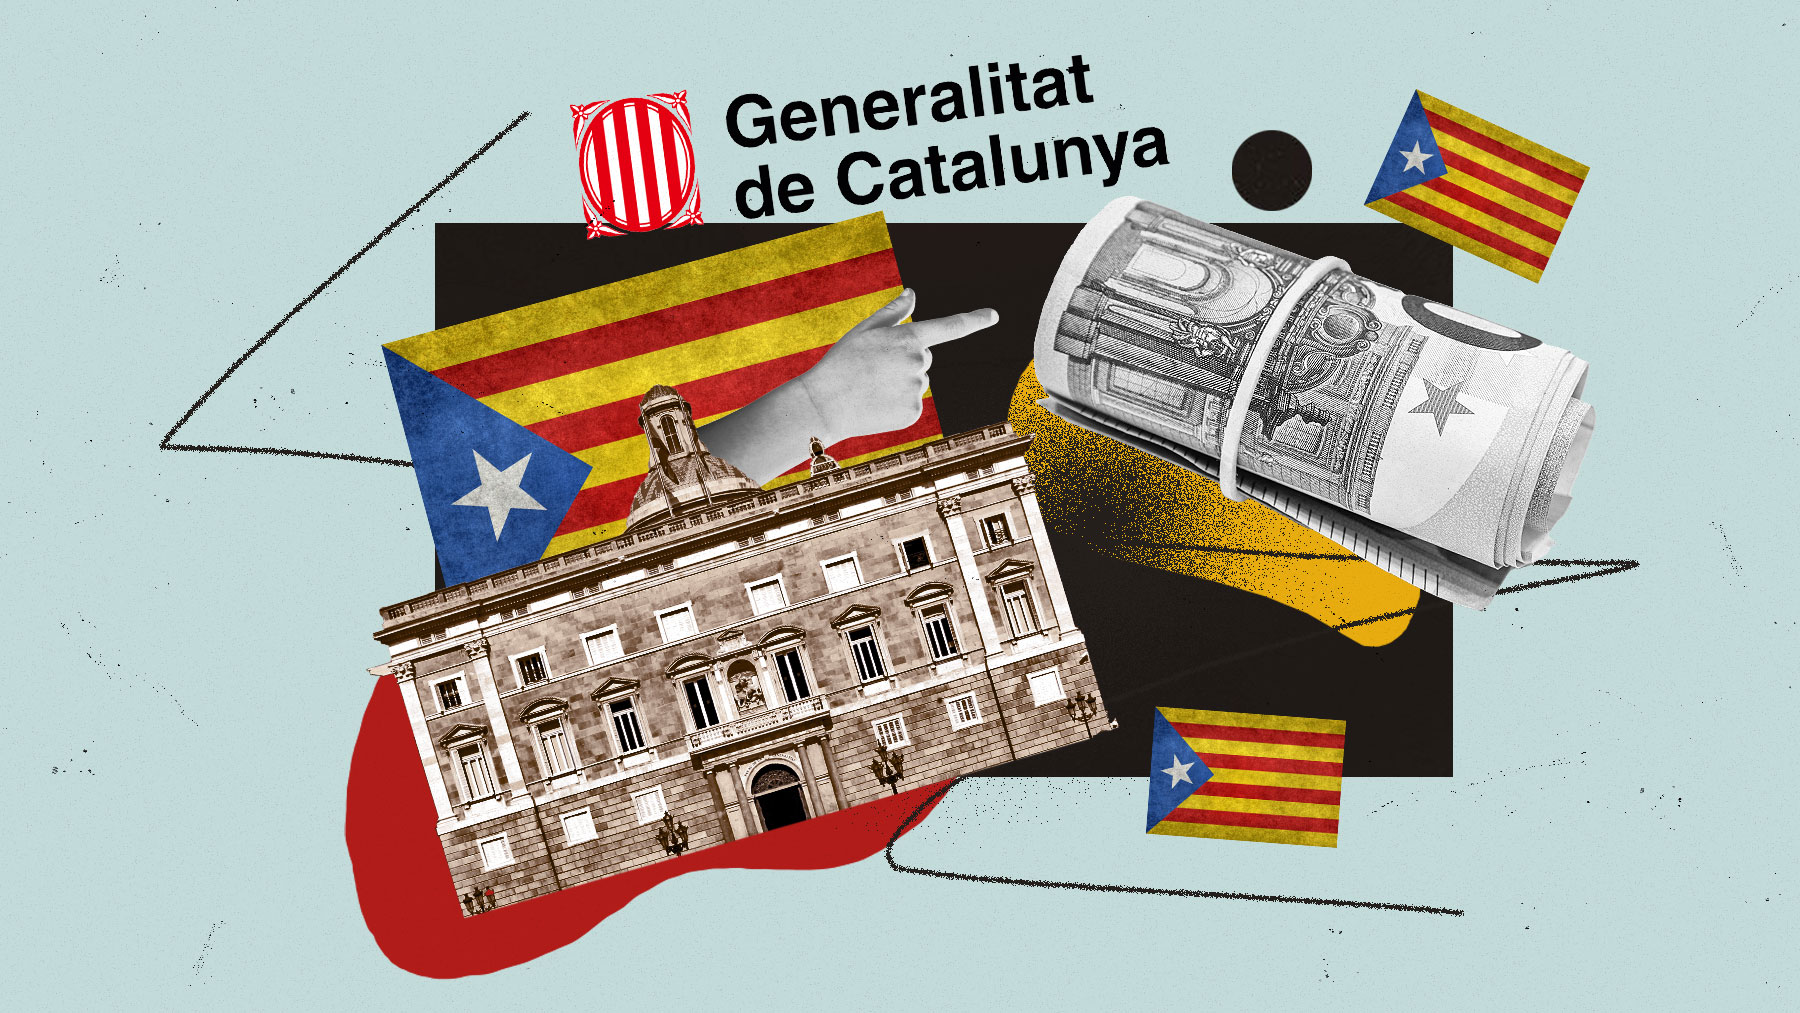 La Generalitat, en vez de defender la devolución del dinero malversado, se pone del lado de los golpistas que desviaron fondos públicos